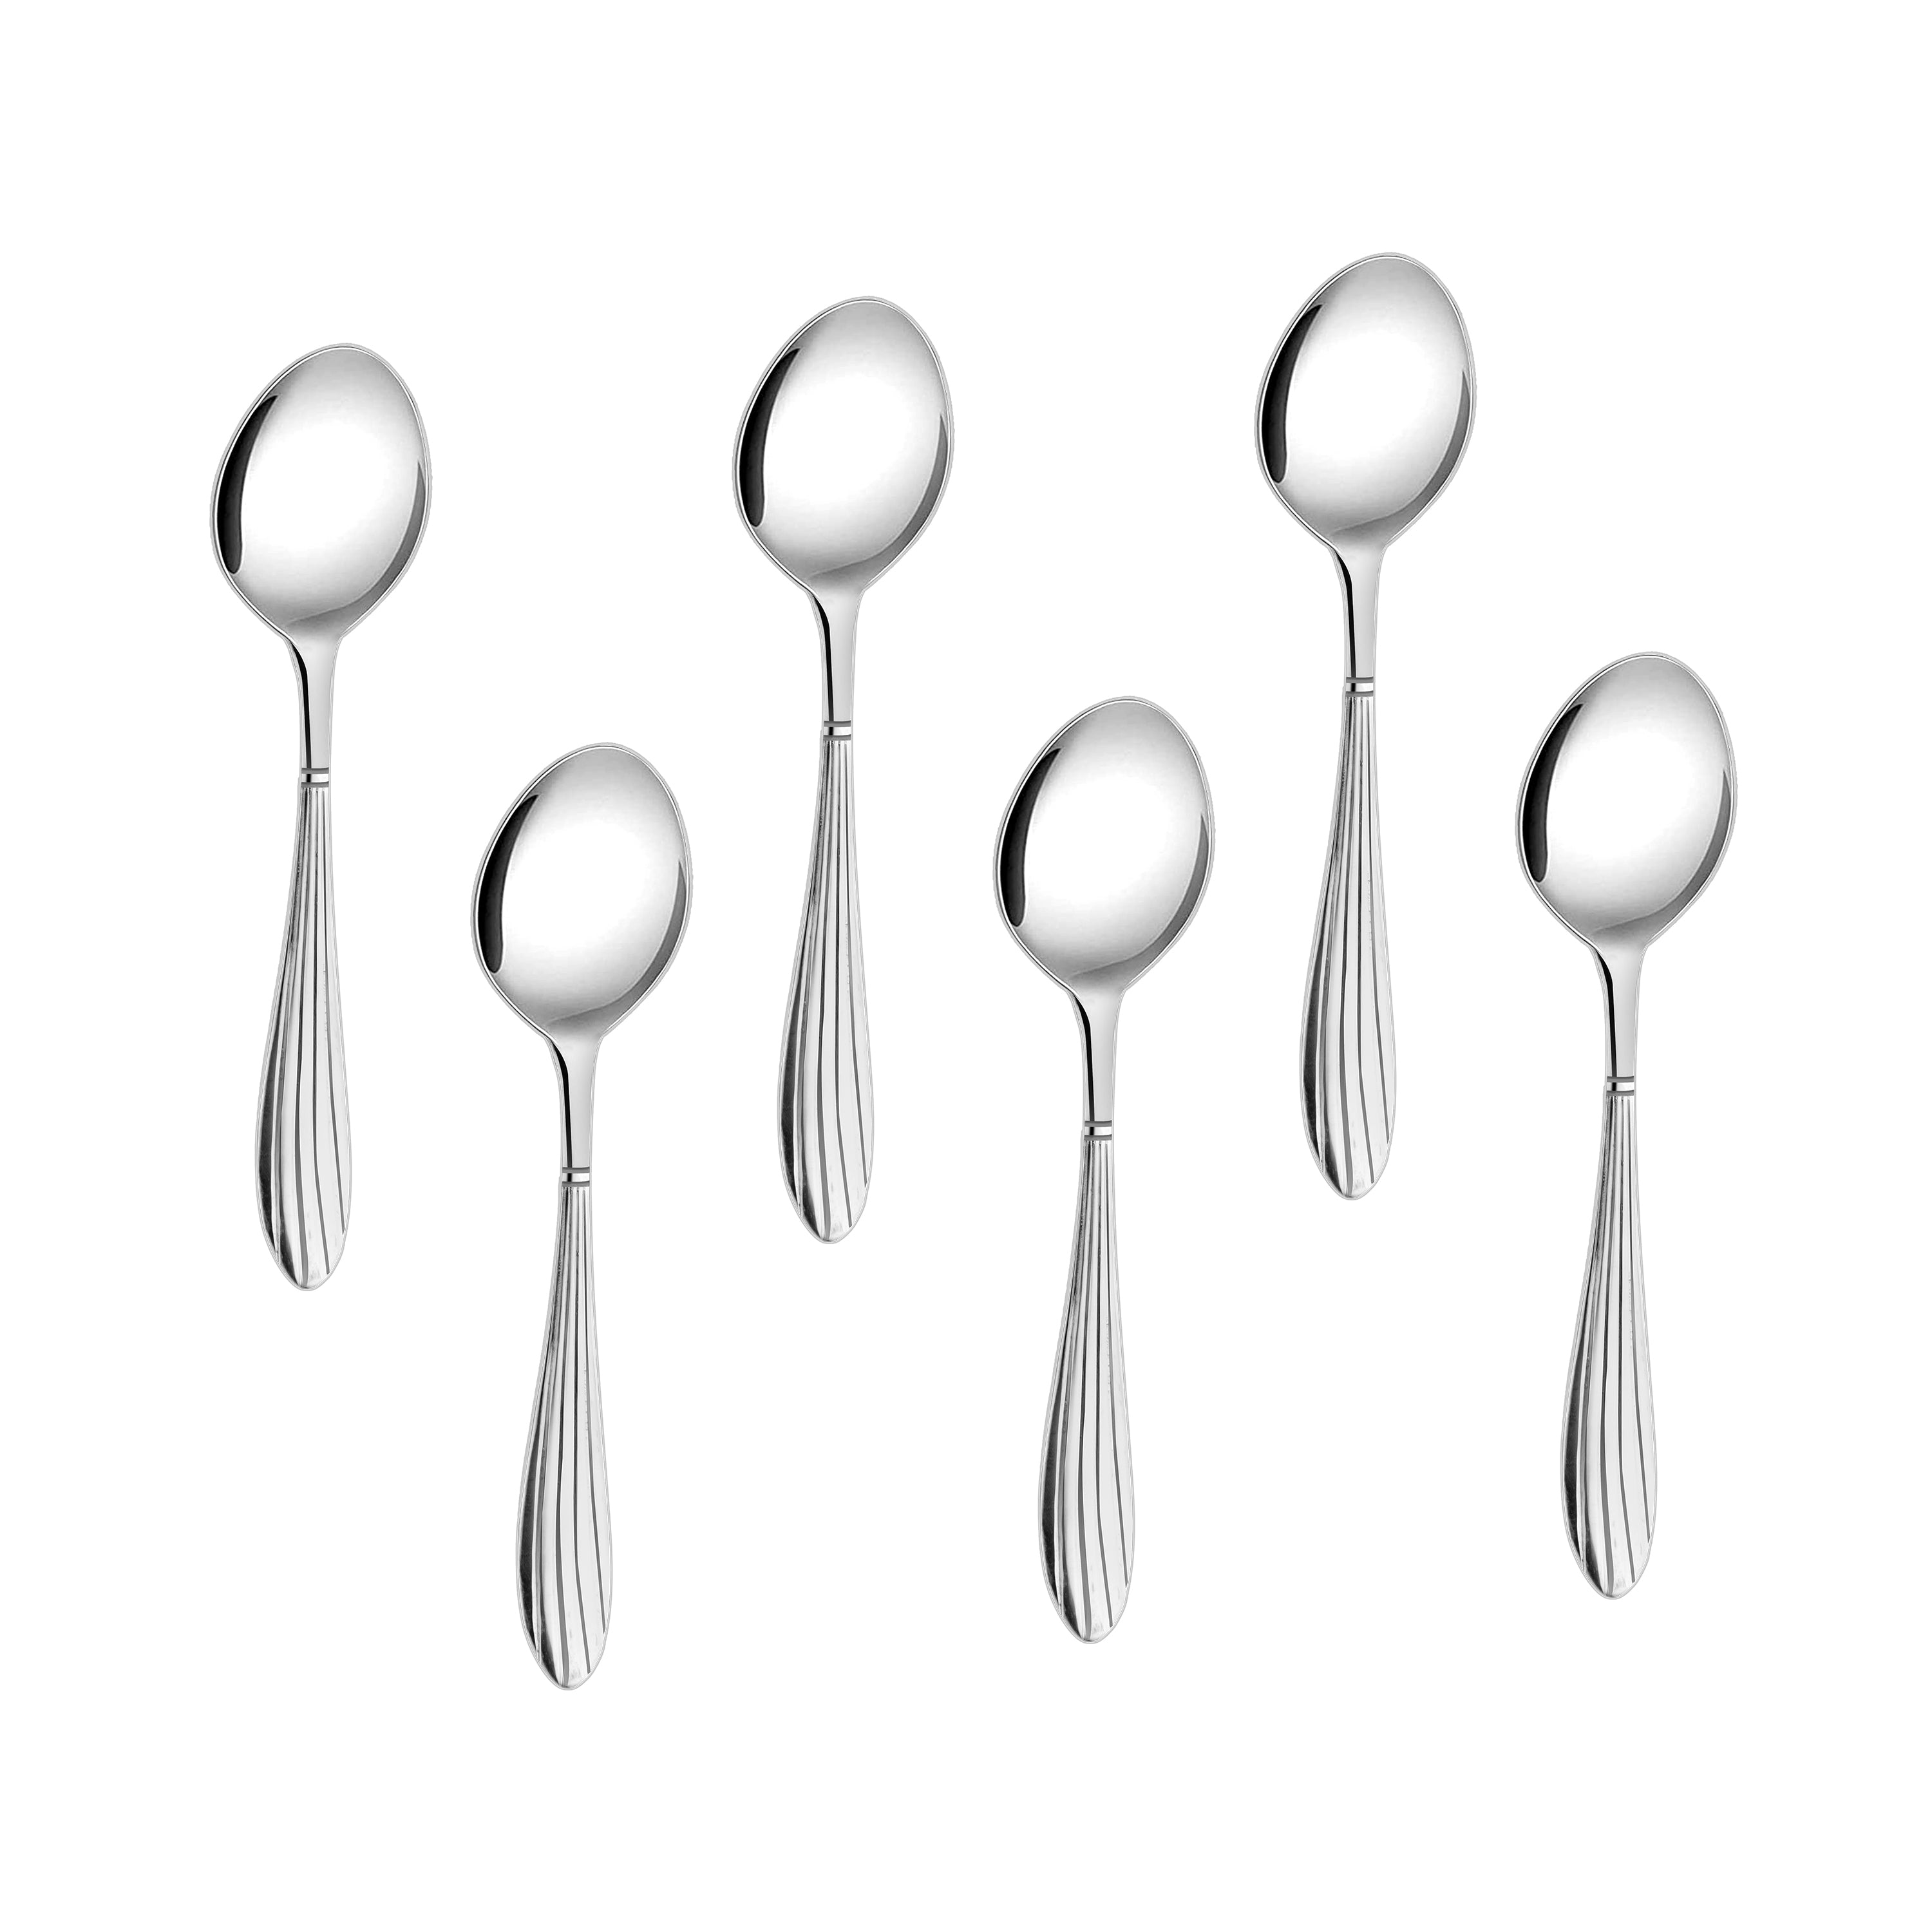 Arias by Lara Dutta Sysco Tea Spoon Set of 6 (Silver)